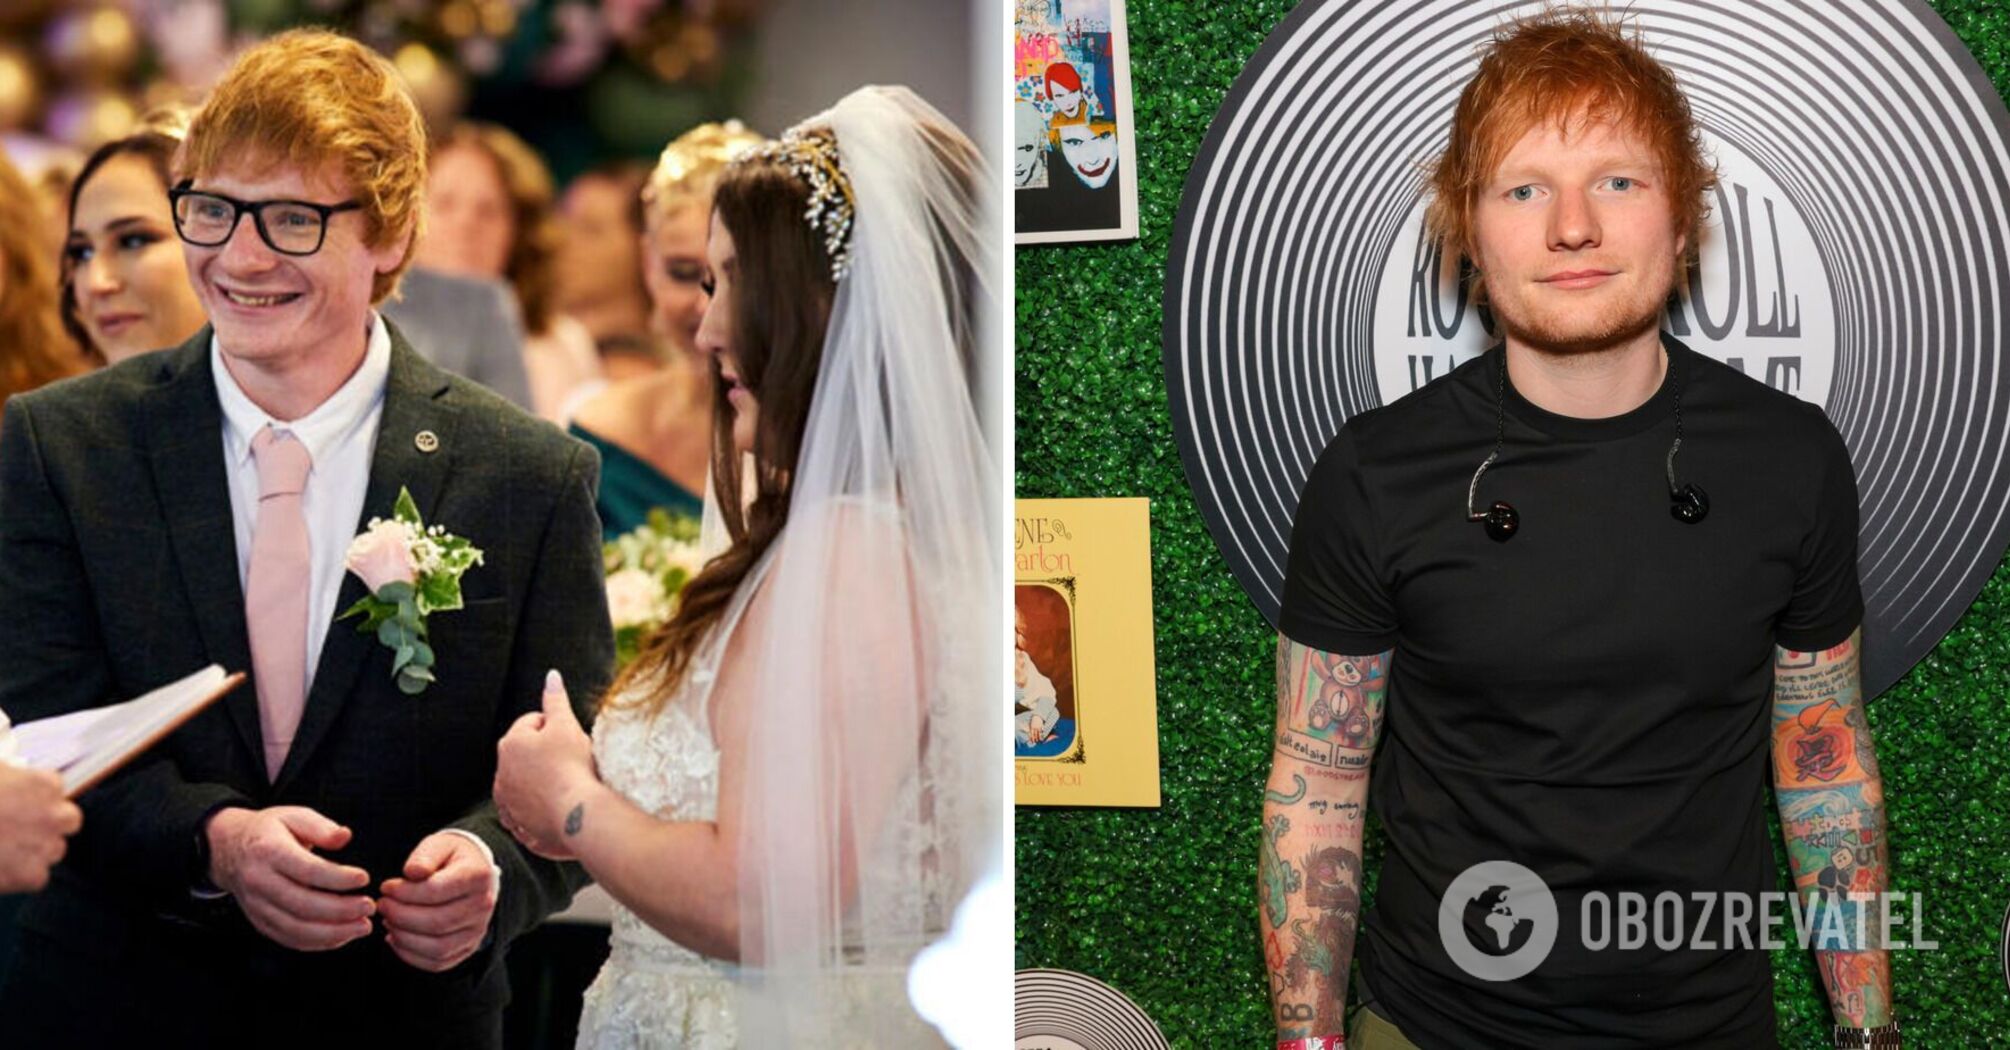 A devoted fan of Ed Sheeran married a star lookalike. Photo